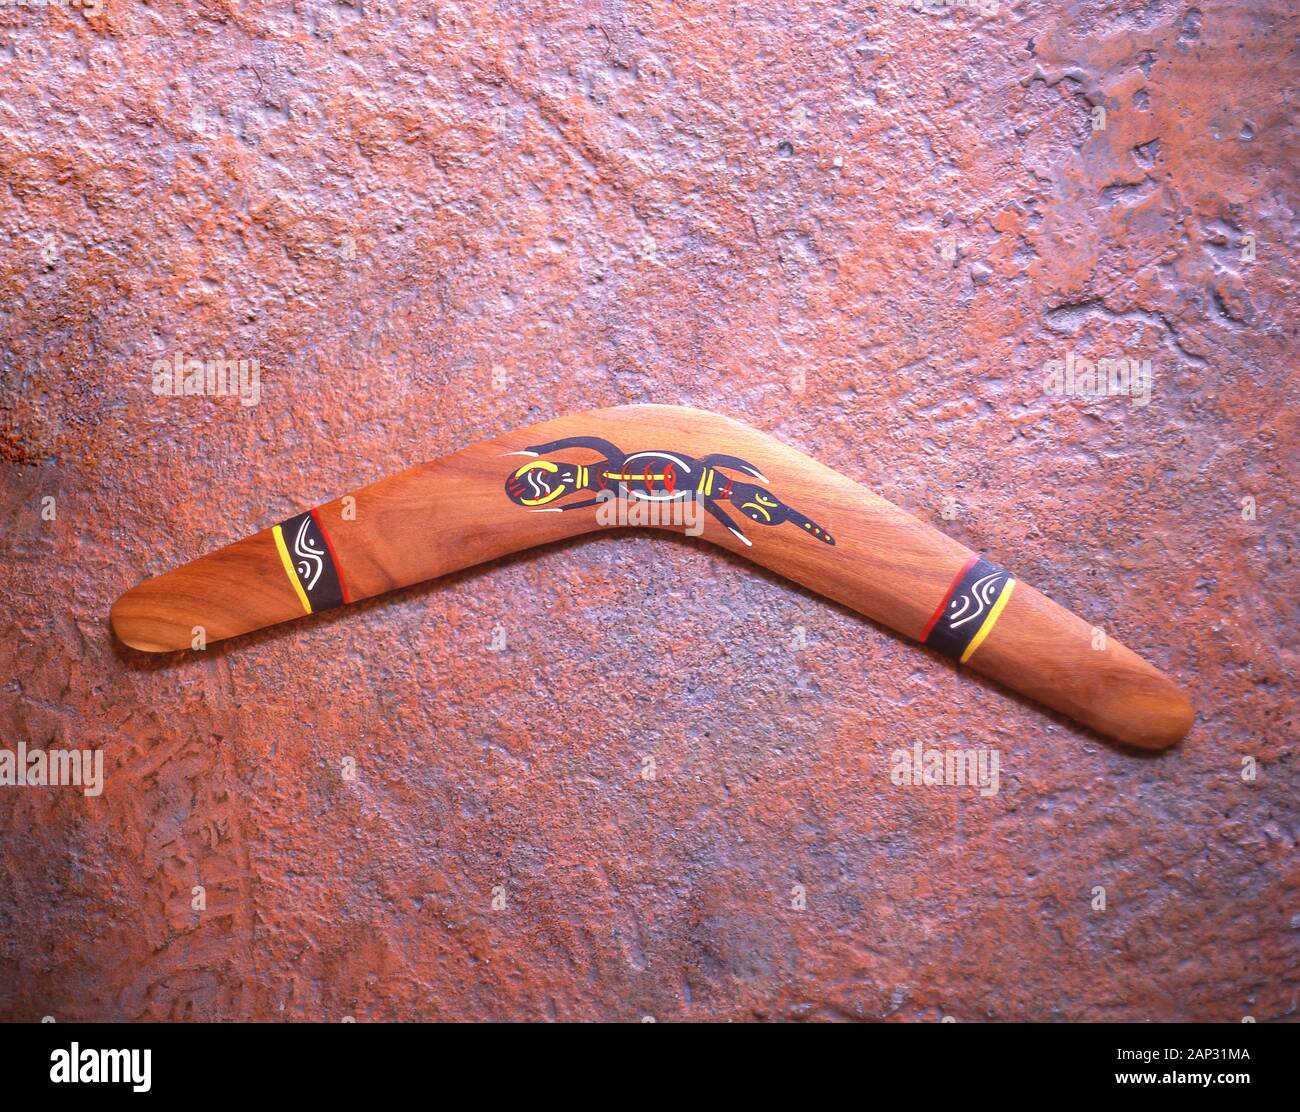 Souvenir Aboriginal boomerang at Koomurri Aboriginal Centre, Echo Point, Katoomba, Blue Mountains, New South Wales, Australia Stock Photo